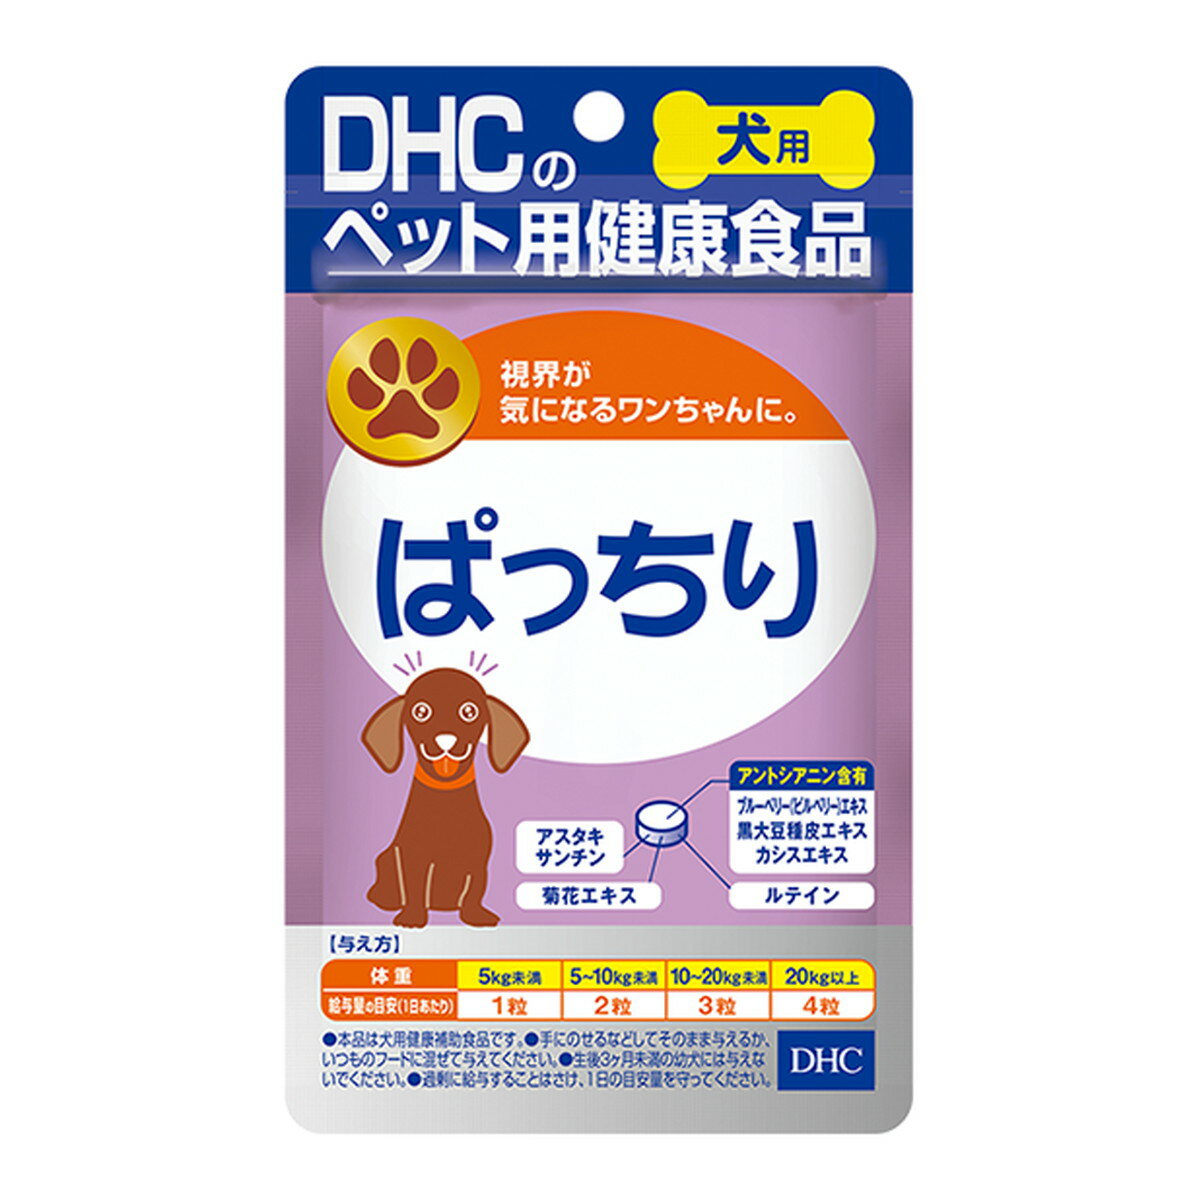 商品名：DHC ペット用健康食品 愛犬用 ぱっちり 60粒内容量：60粒JANコード：4511413608647発売元、製造元、輸入元又は販売元：DHC原産国：日本商品番号：103-4511413608647商品説明視界の健康に効果的な6つの成分を配合。すばやいアプローチでワンちゃんの瞳の健康をキープします。広告文責：アットライフ株式会社TEL 050-3196-1510 ※商品パッケージは変更の場合あり。メーカー欠品または完売の際、キャンセルをお願いすることがあります。ご了承ください。